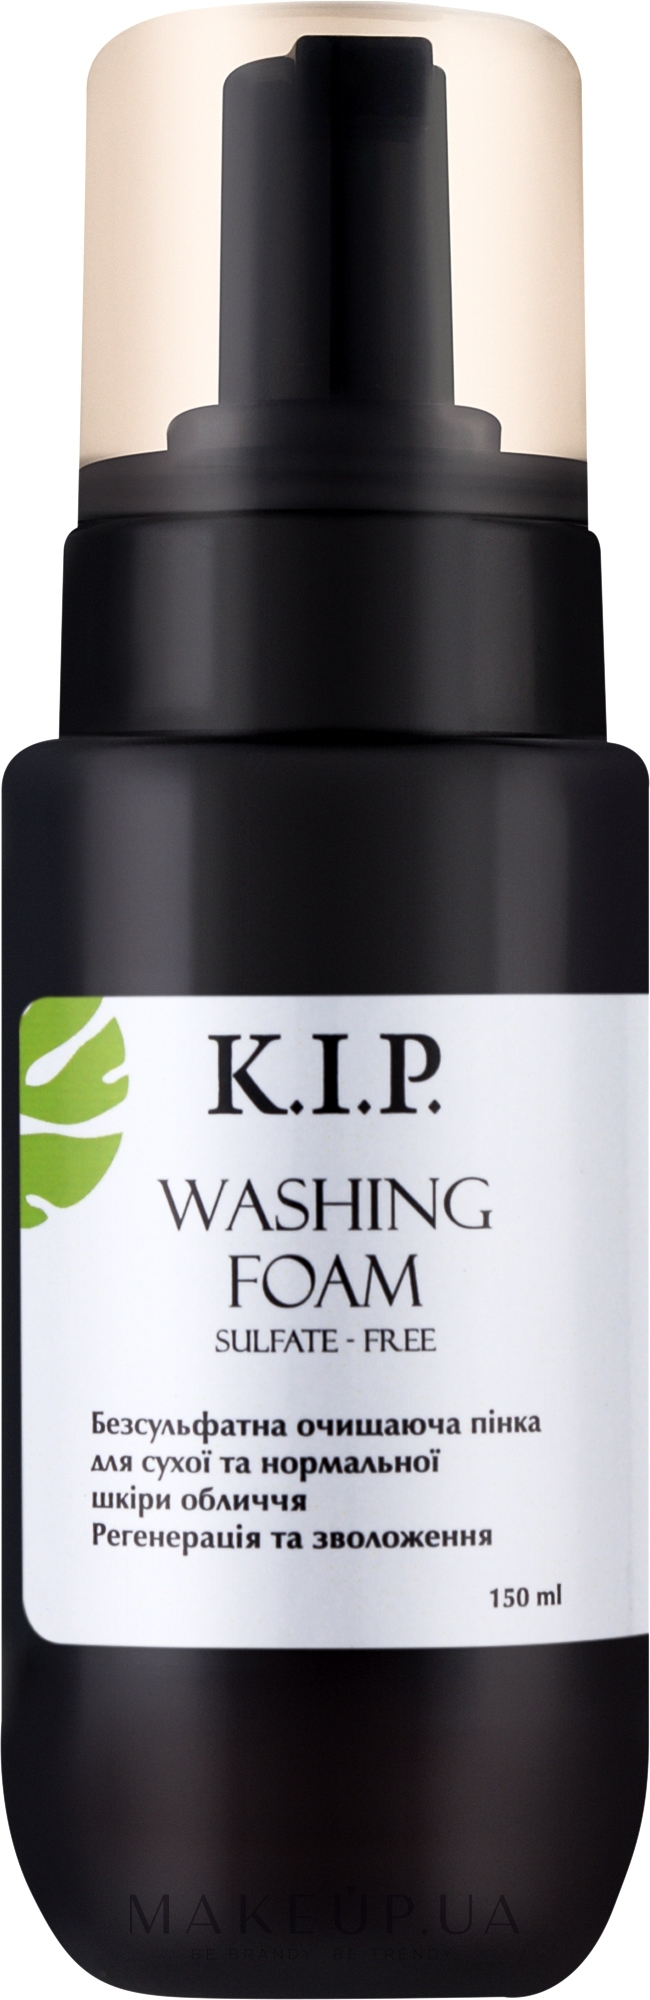 Безсульфатна очищуюча пінка "Регенерація та зволоження шкіри" - K.I.P. Washing Foam — фото 150ml